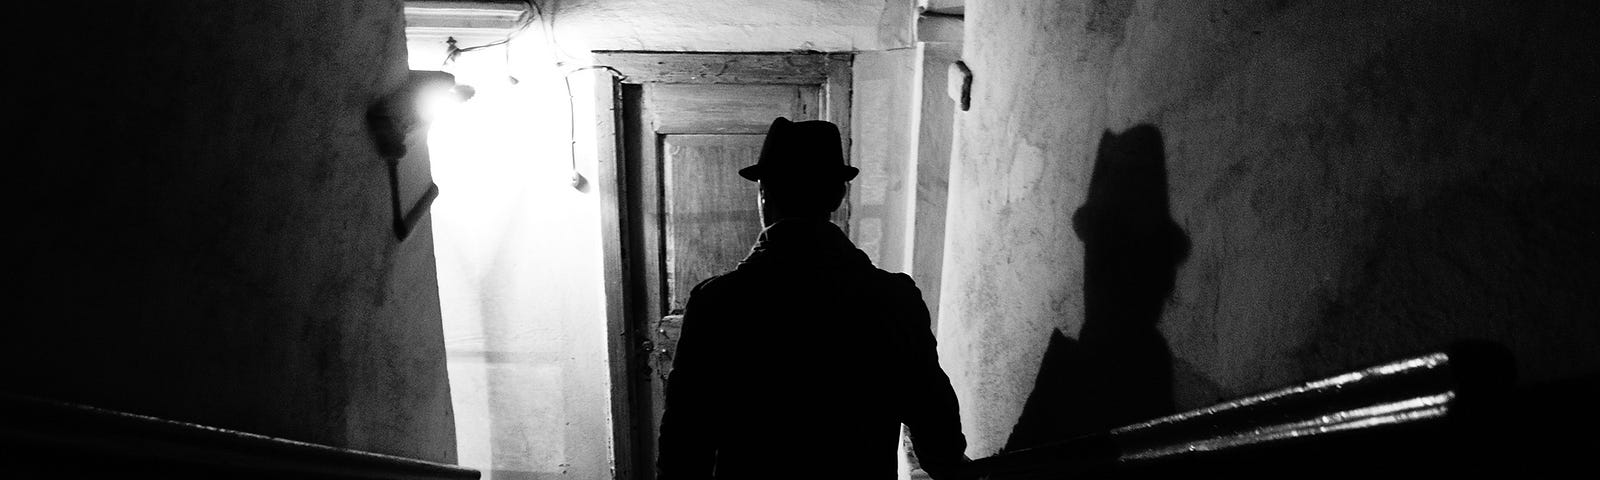 noir-style photograph of a figure descending a staircase